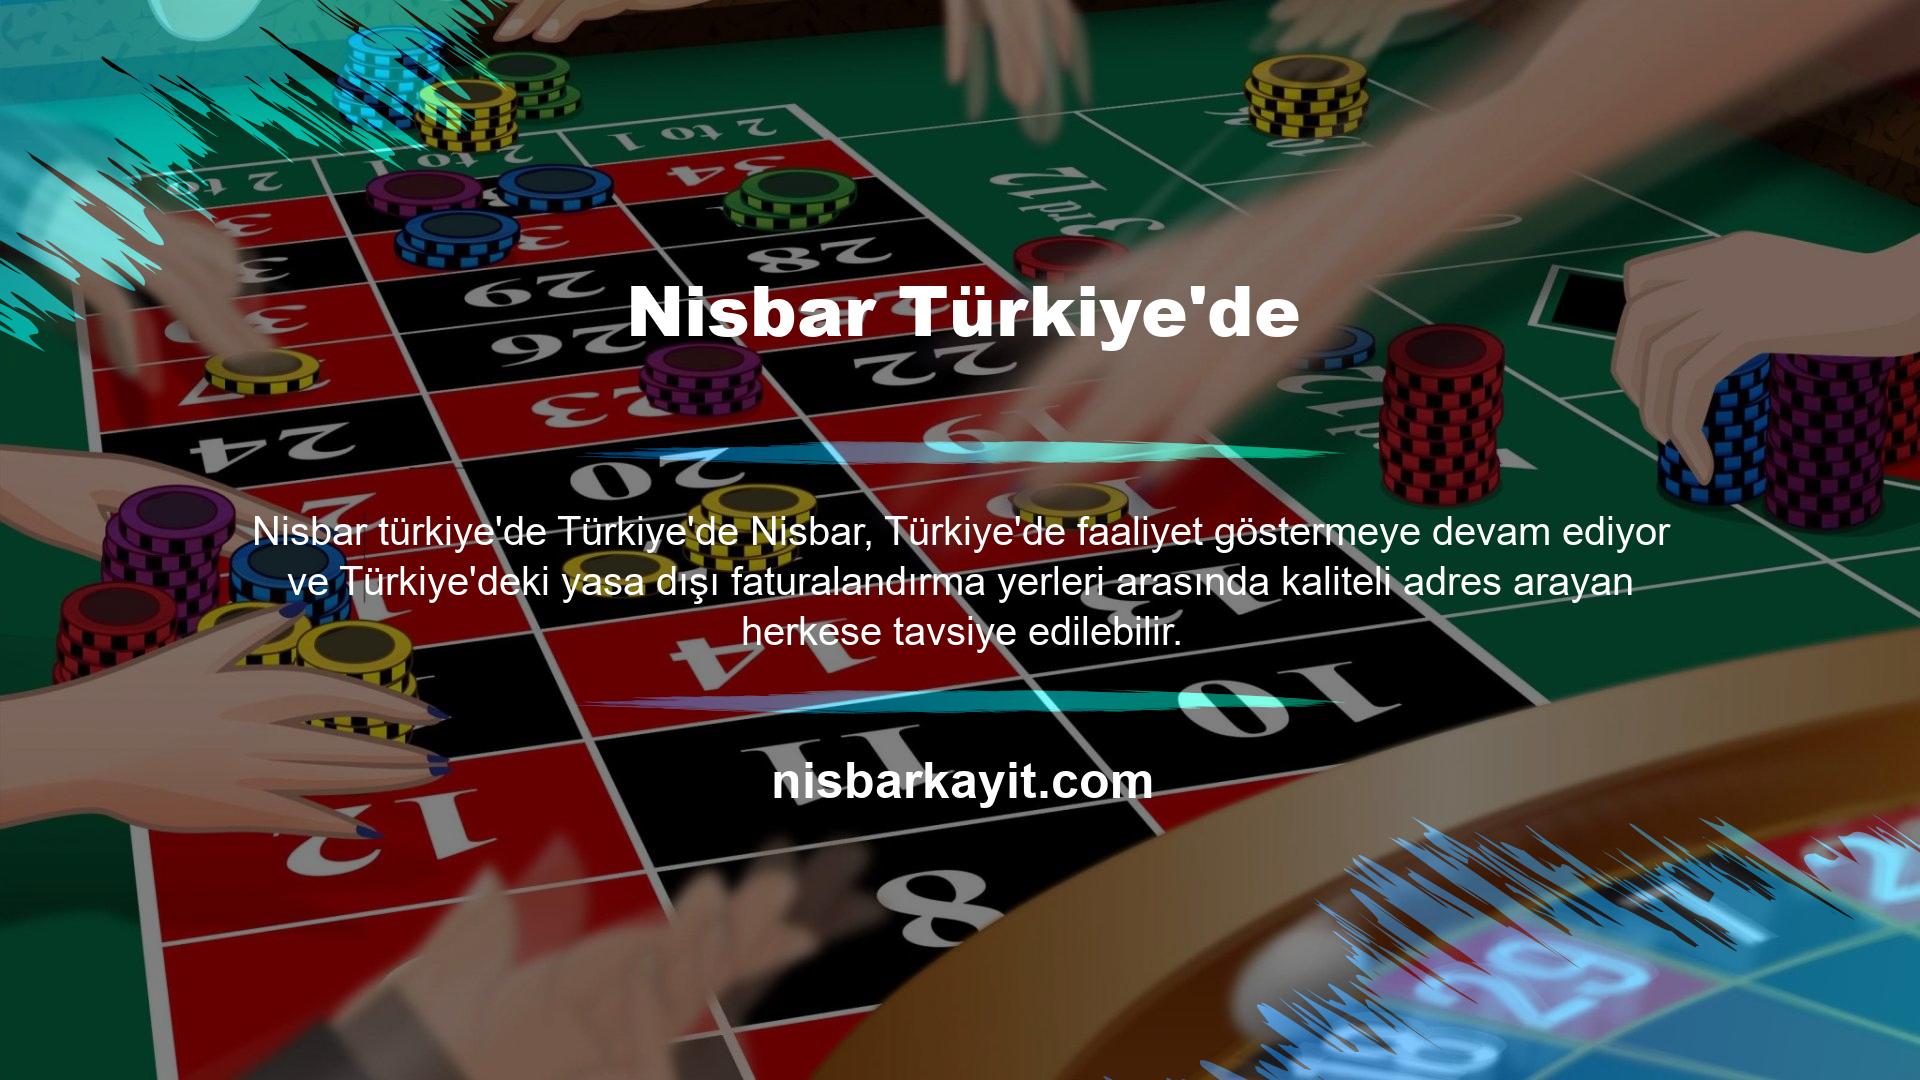 Nisbar Türkiye'de